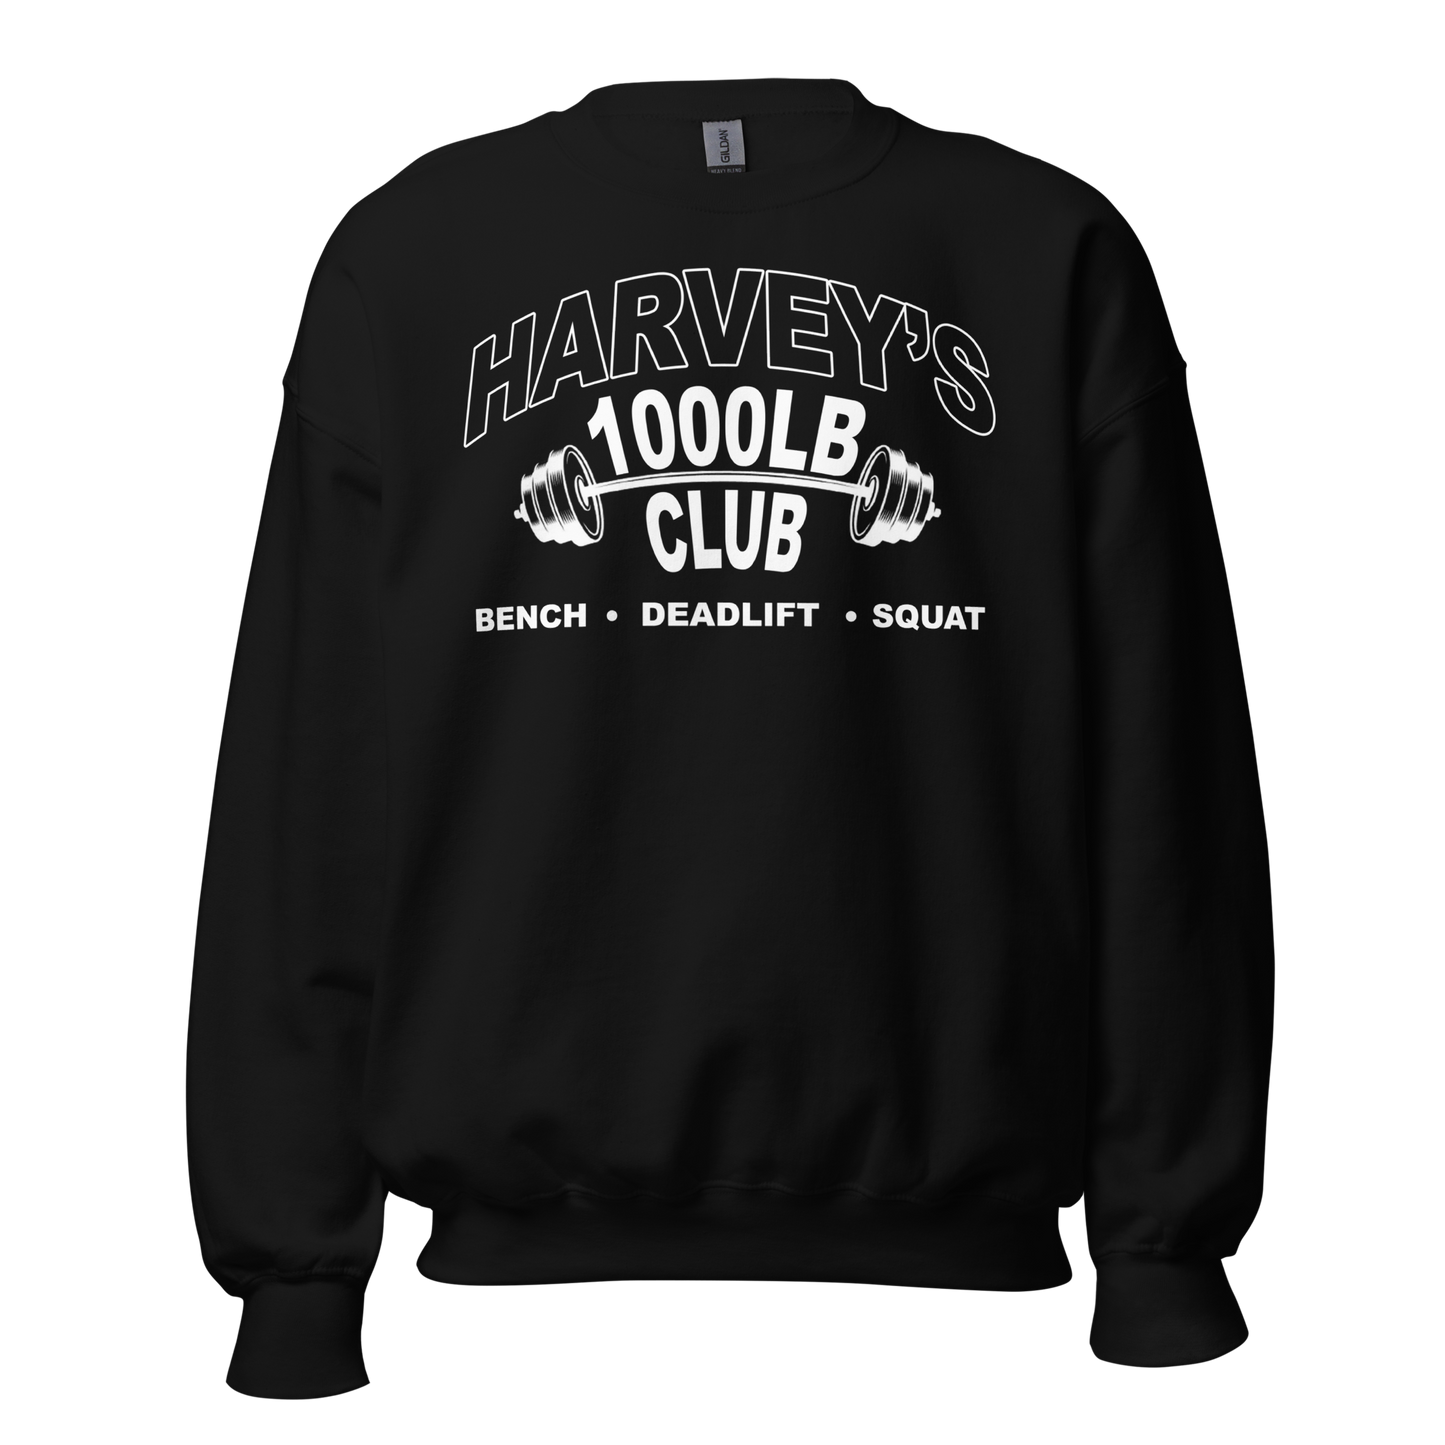 1000lb Club Sweatshirt